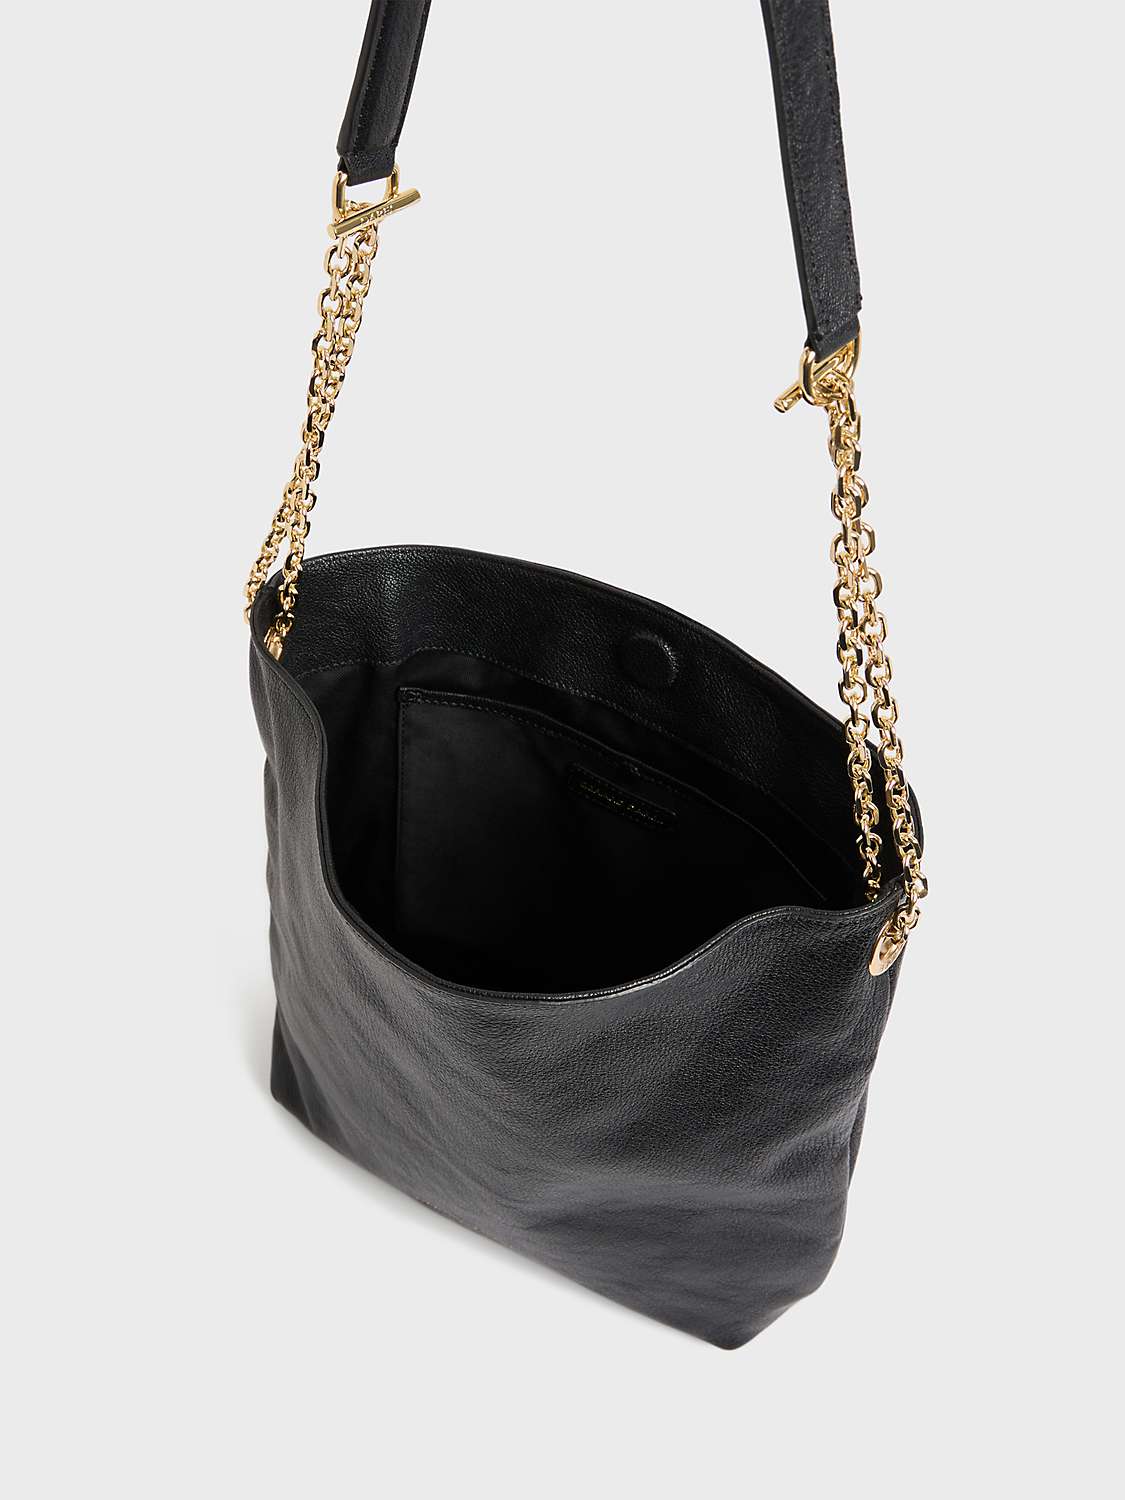 Buy Gerard Darel Charlotte Leather Handbag, Black Online at johnlewis.com